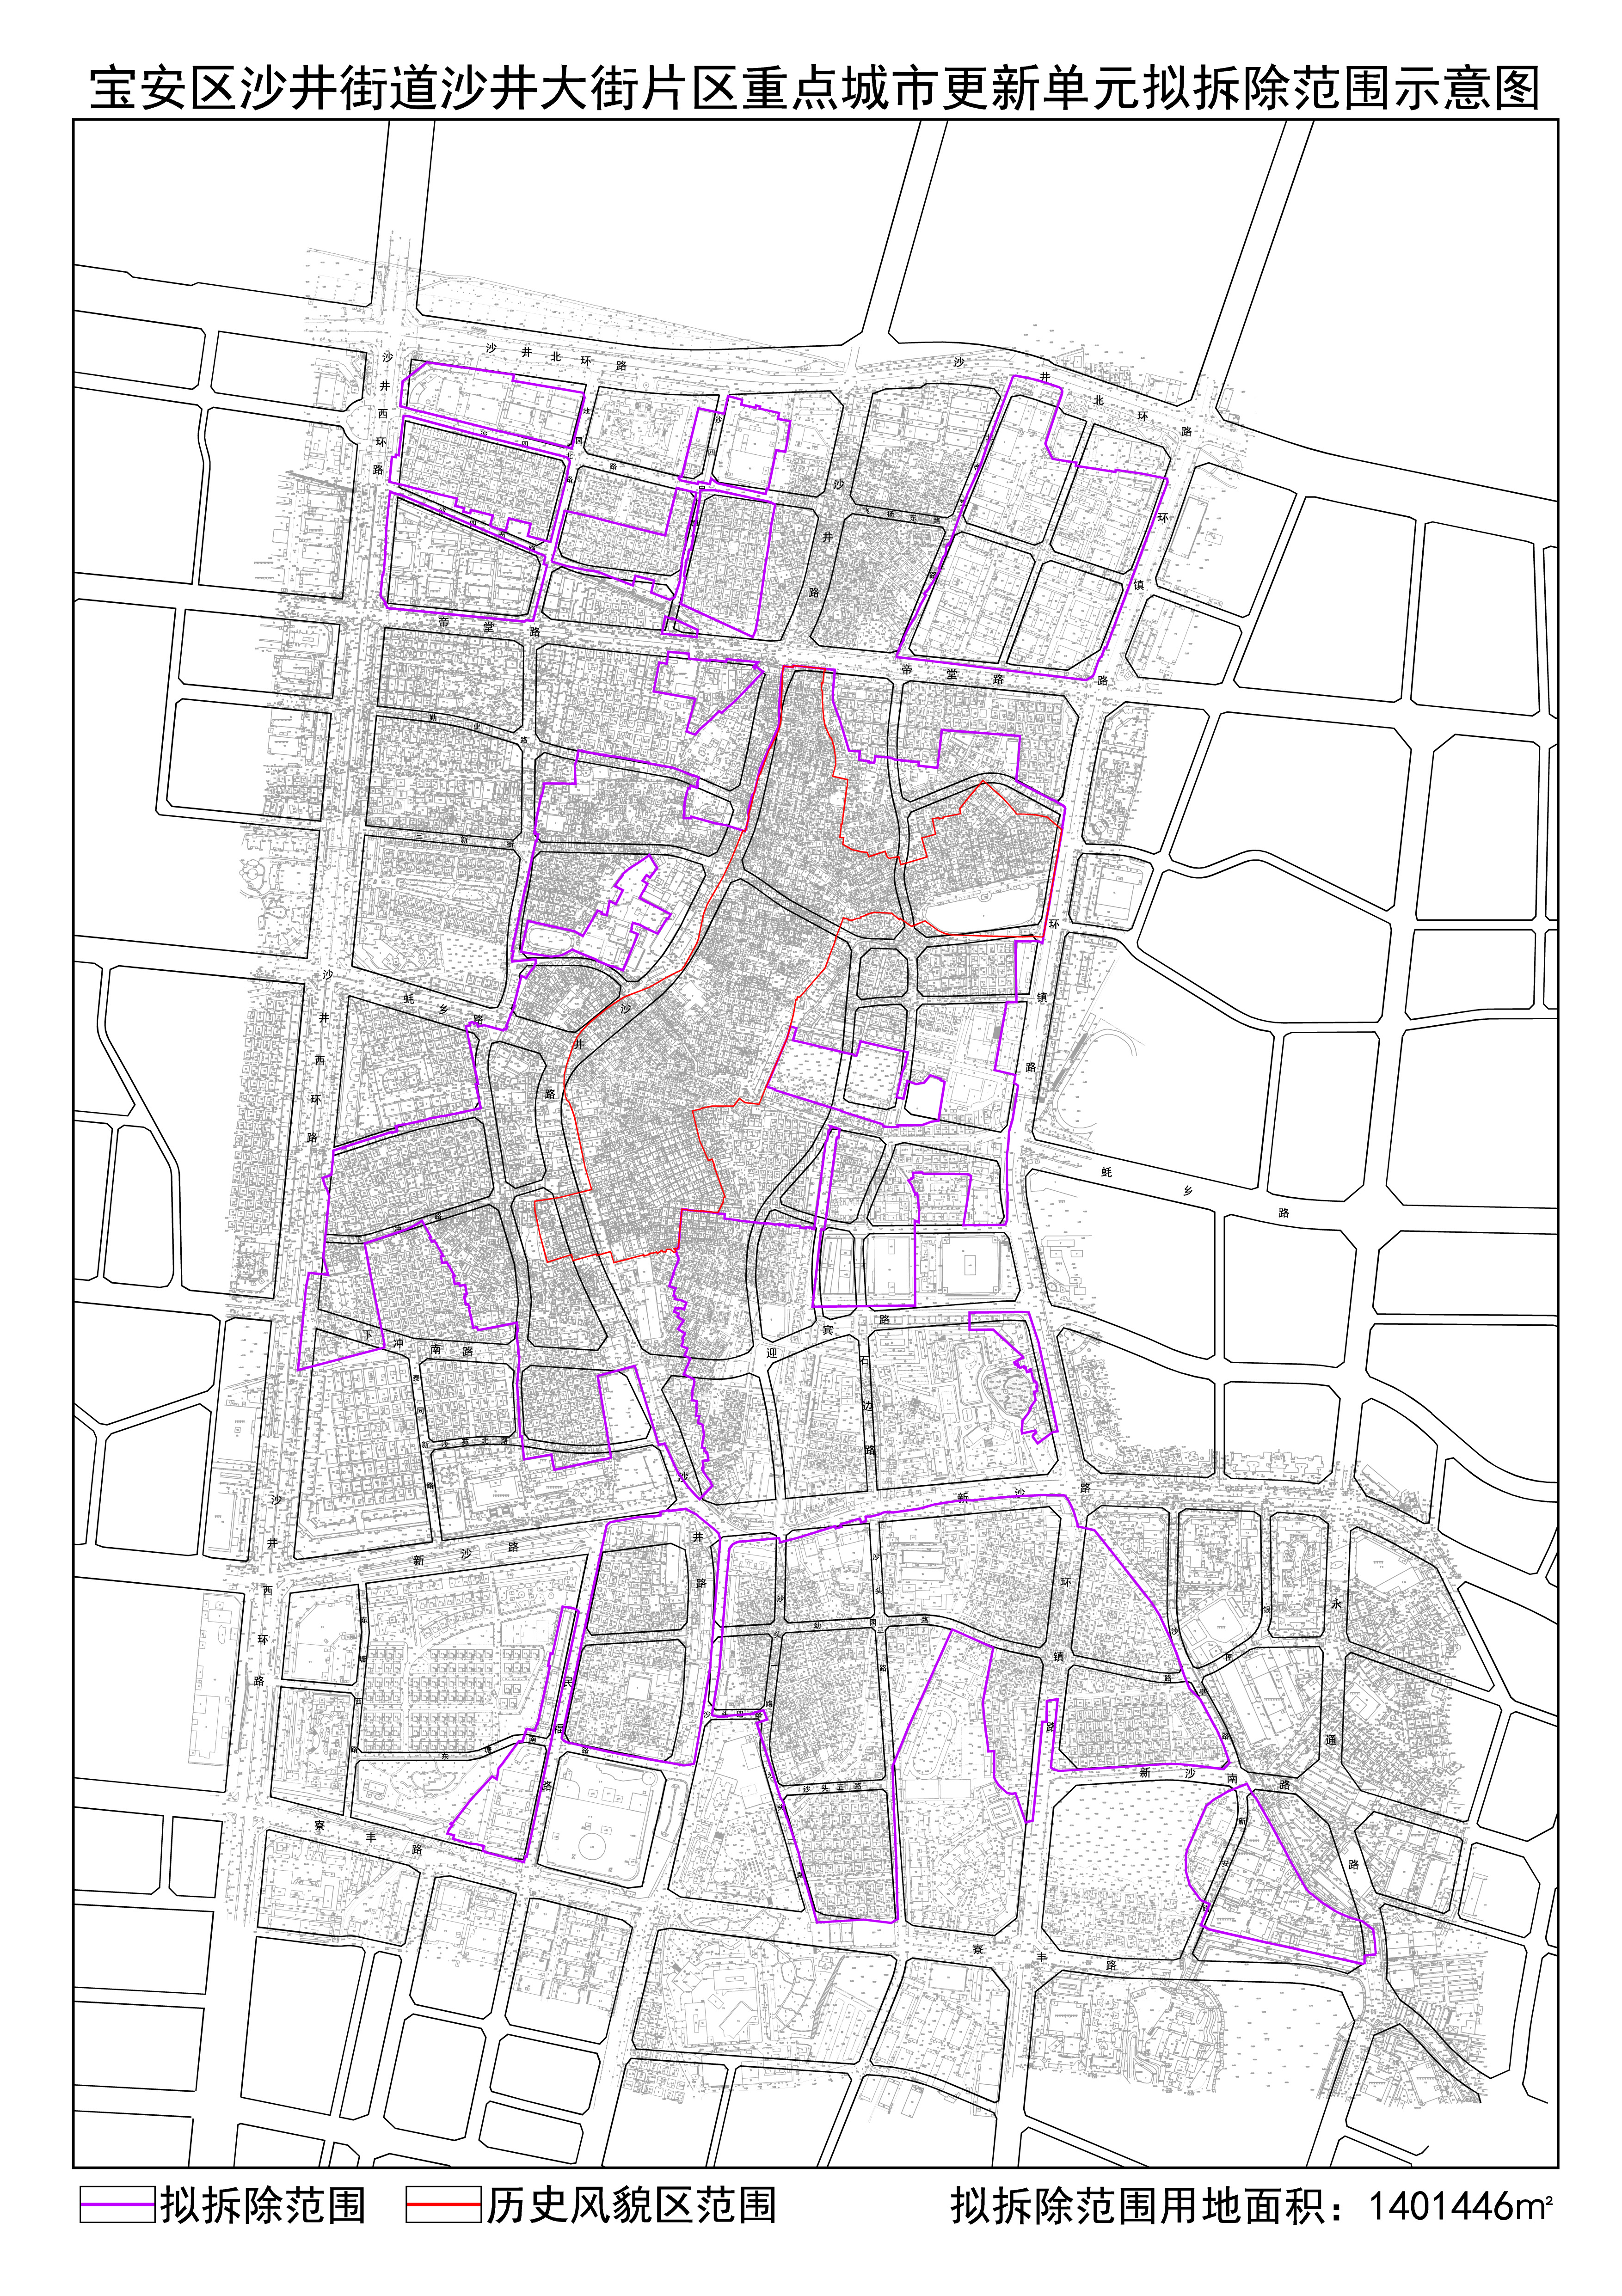 关于《宝安区沙井街道沙井大街片区重点城市更新单元计划》的公告